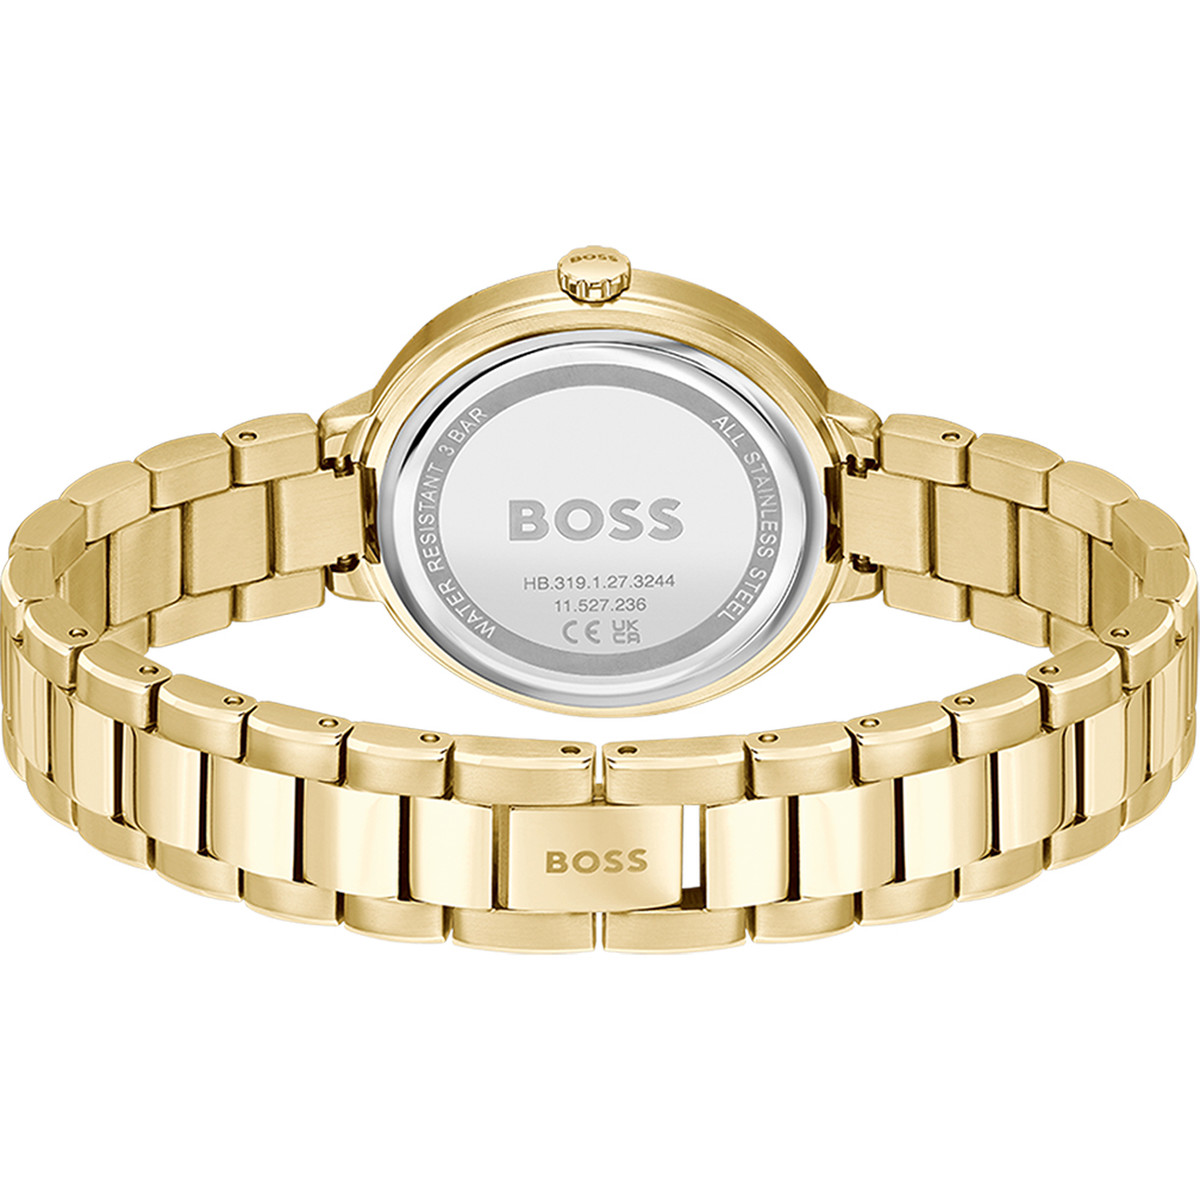 Montre BOSS business femme bracelet acier inoxydable doré jaune - vue 3